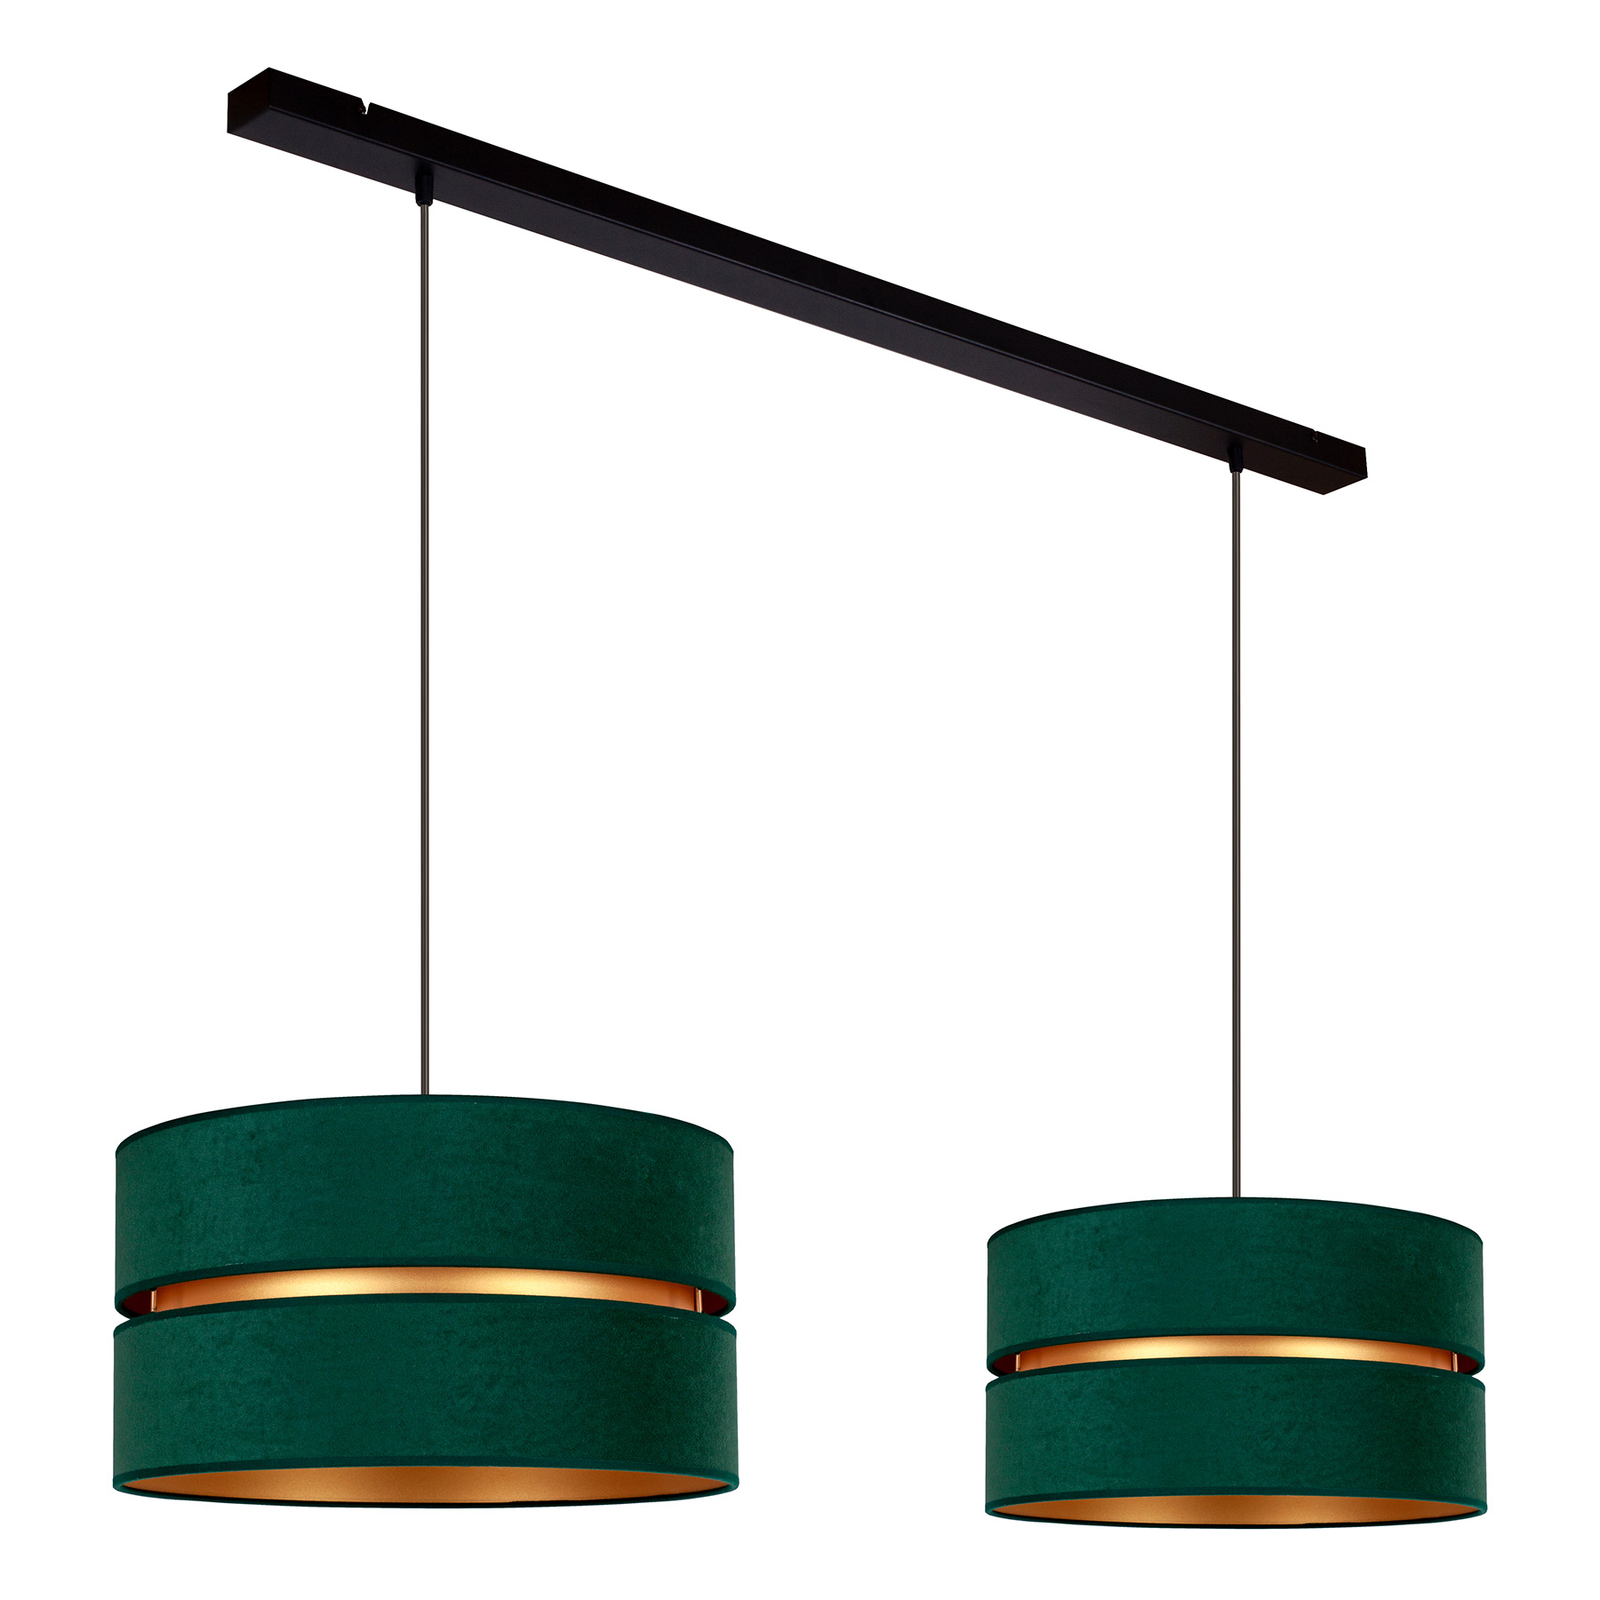 Duo hængelampe, grøn/guld, 2 lyskilder